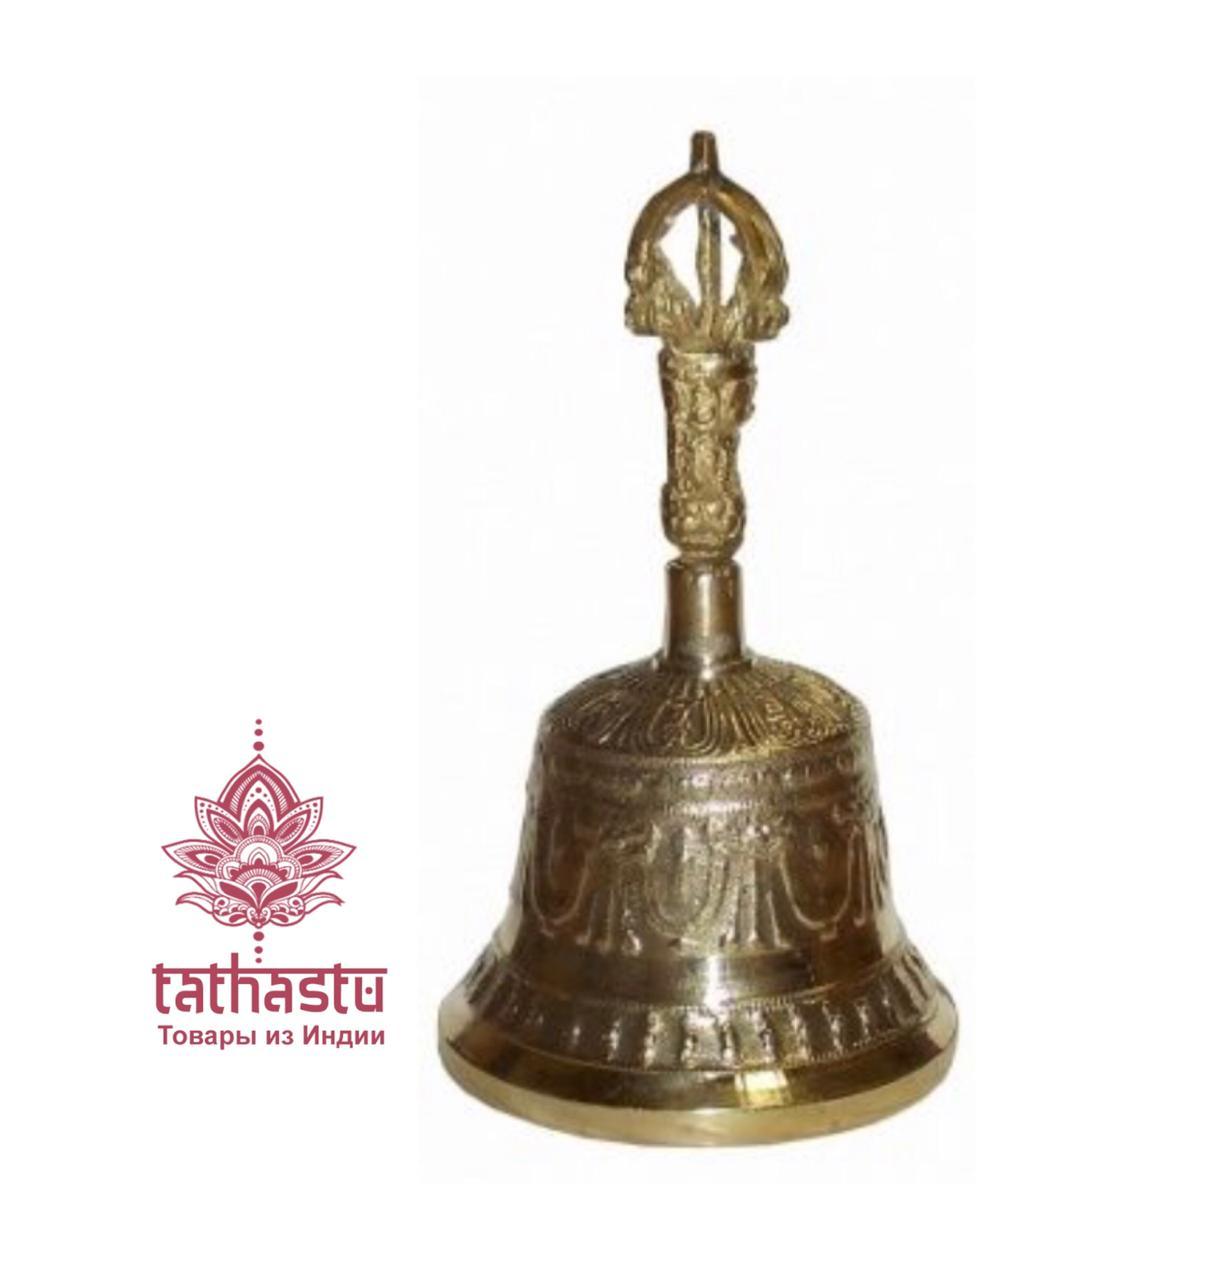 Тибетский поющий колокол. Tathastu товары и индии